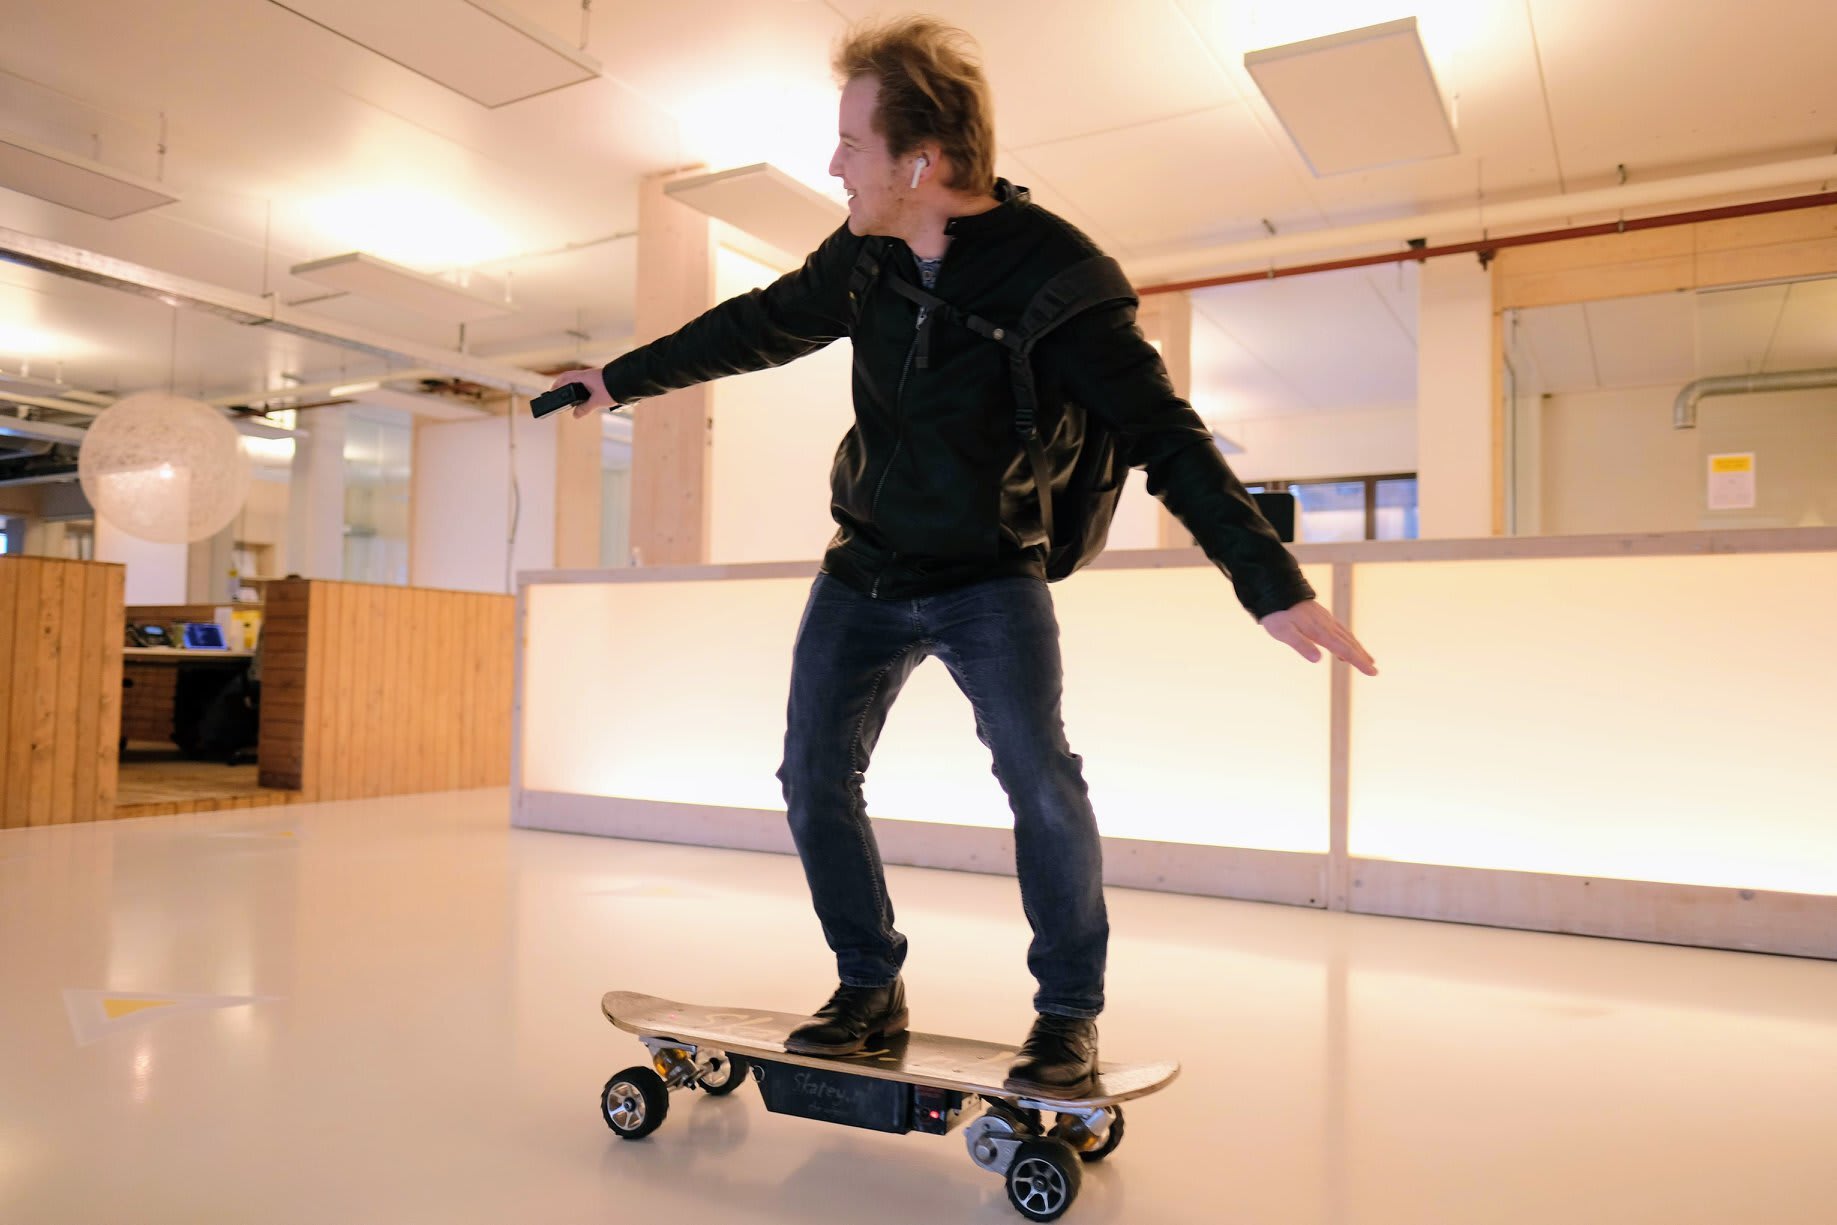 Remko skateboarding